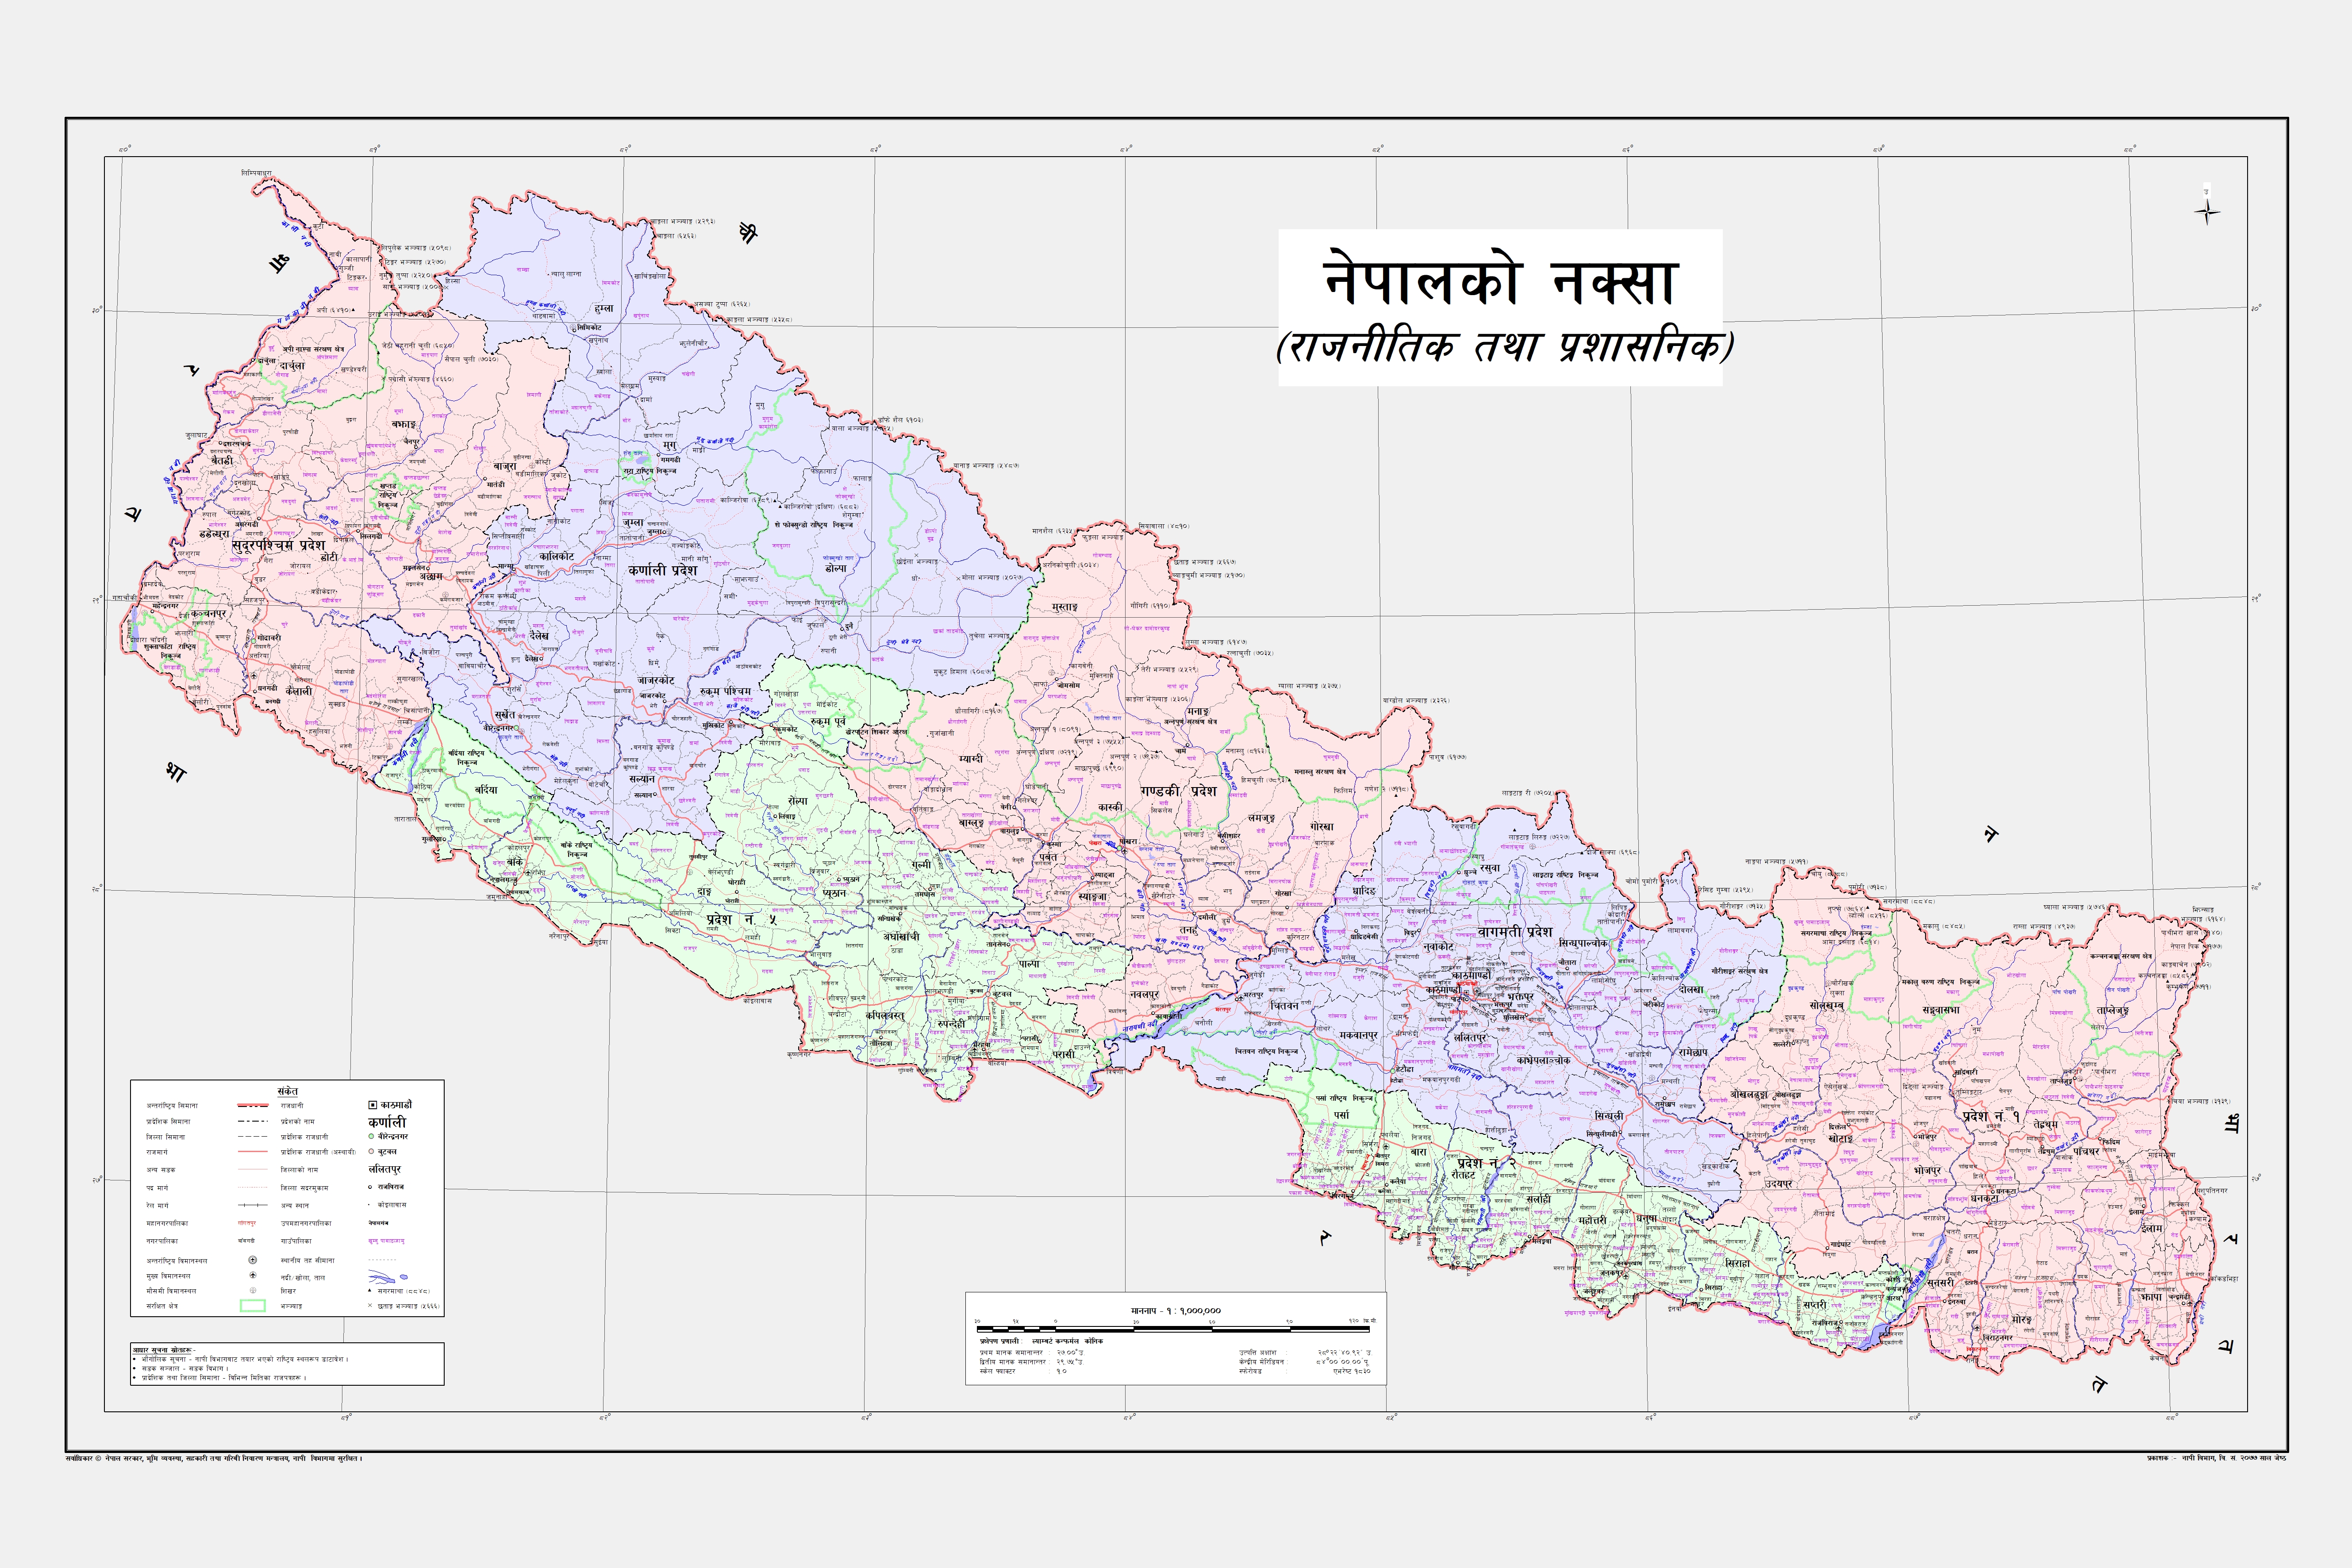 नेपाल : प्रतिनिधि सभा, राष्ट्रिय सभा र प्रदेशबारे सम्पूर्ण जानकारी